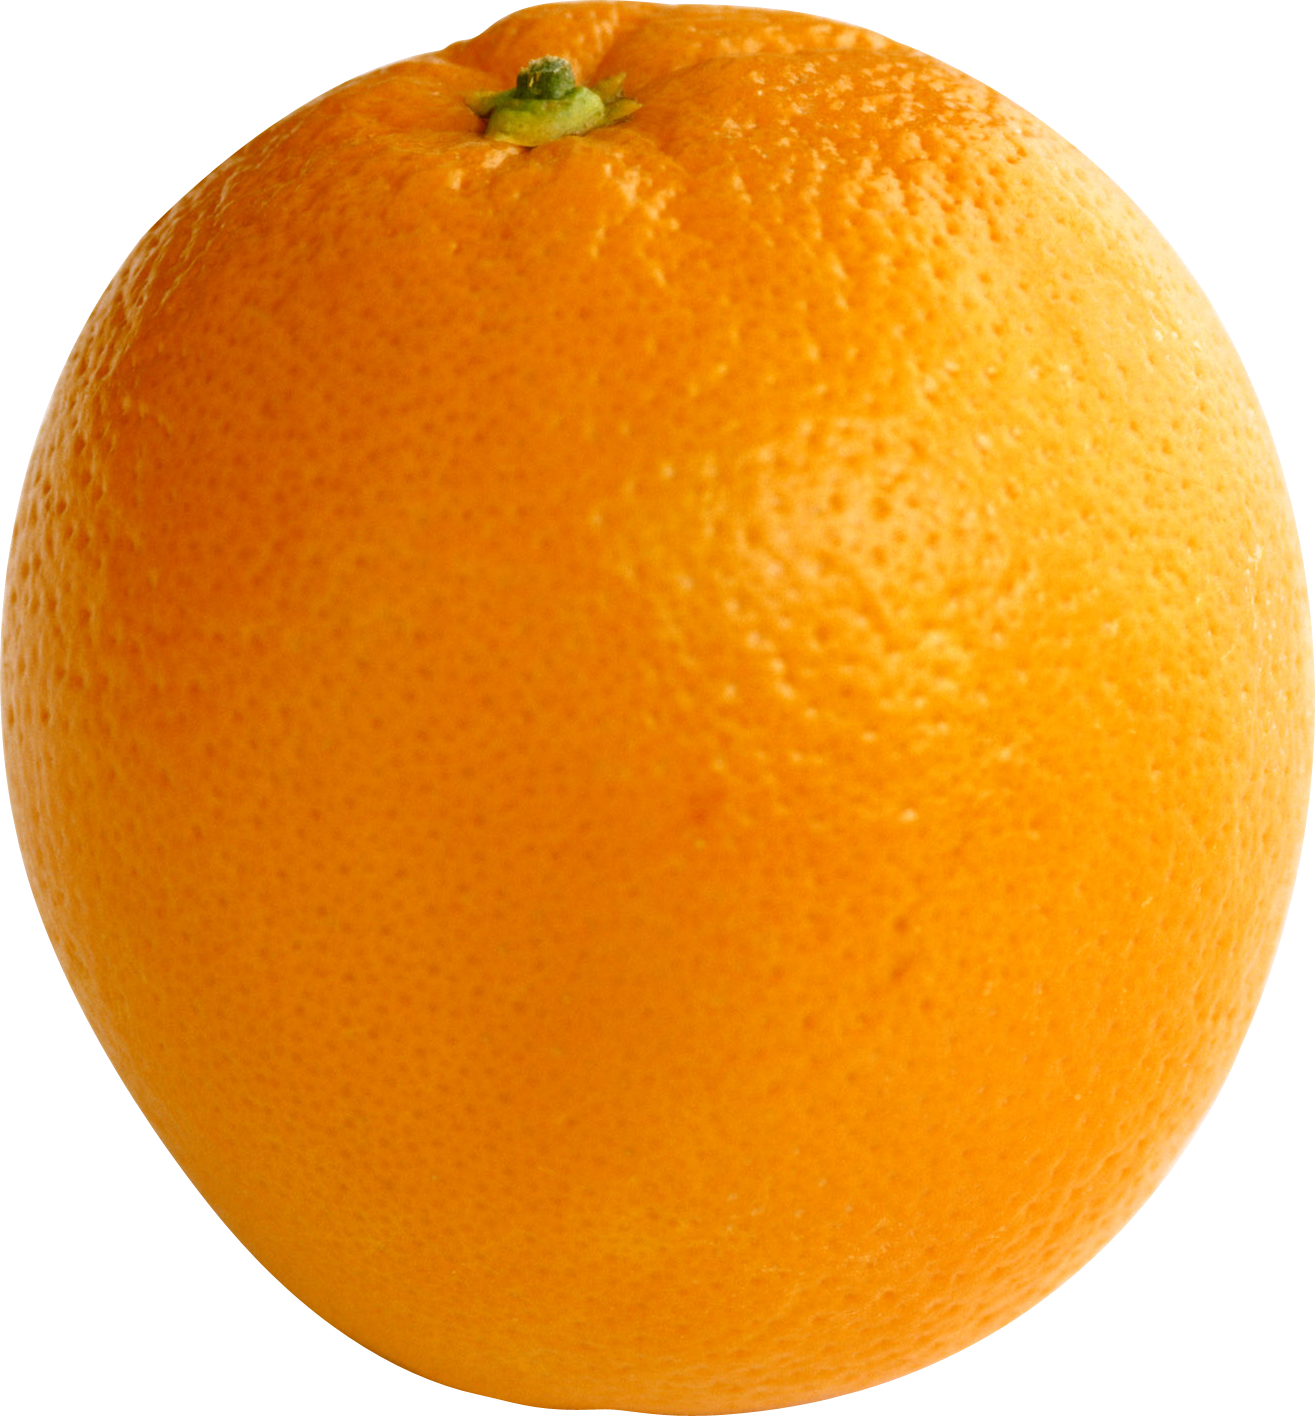 成熟的大橙子